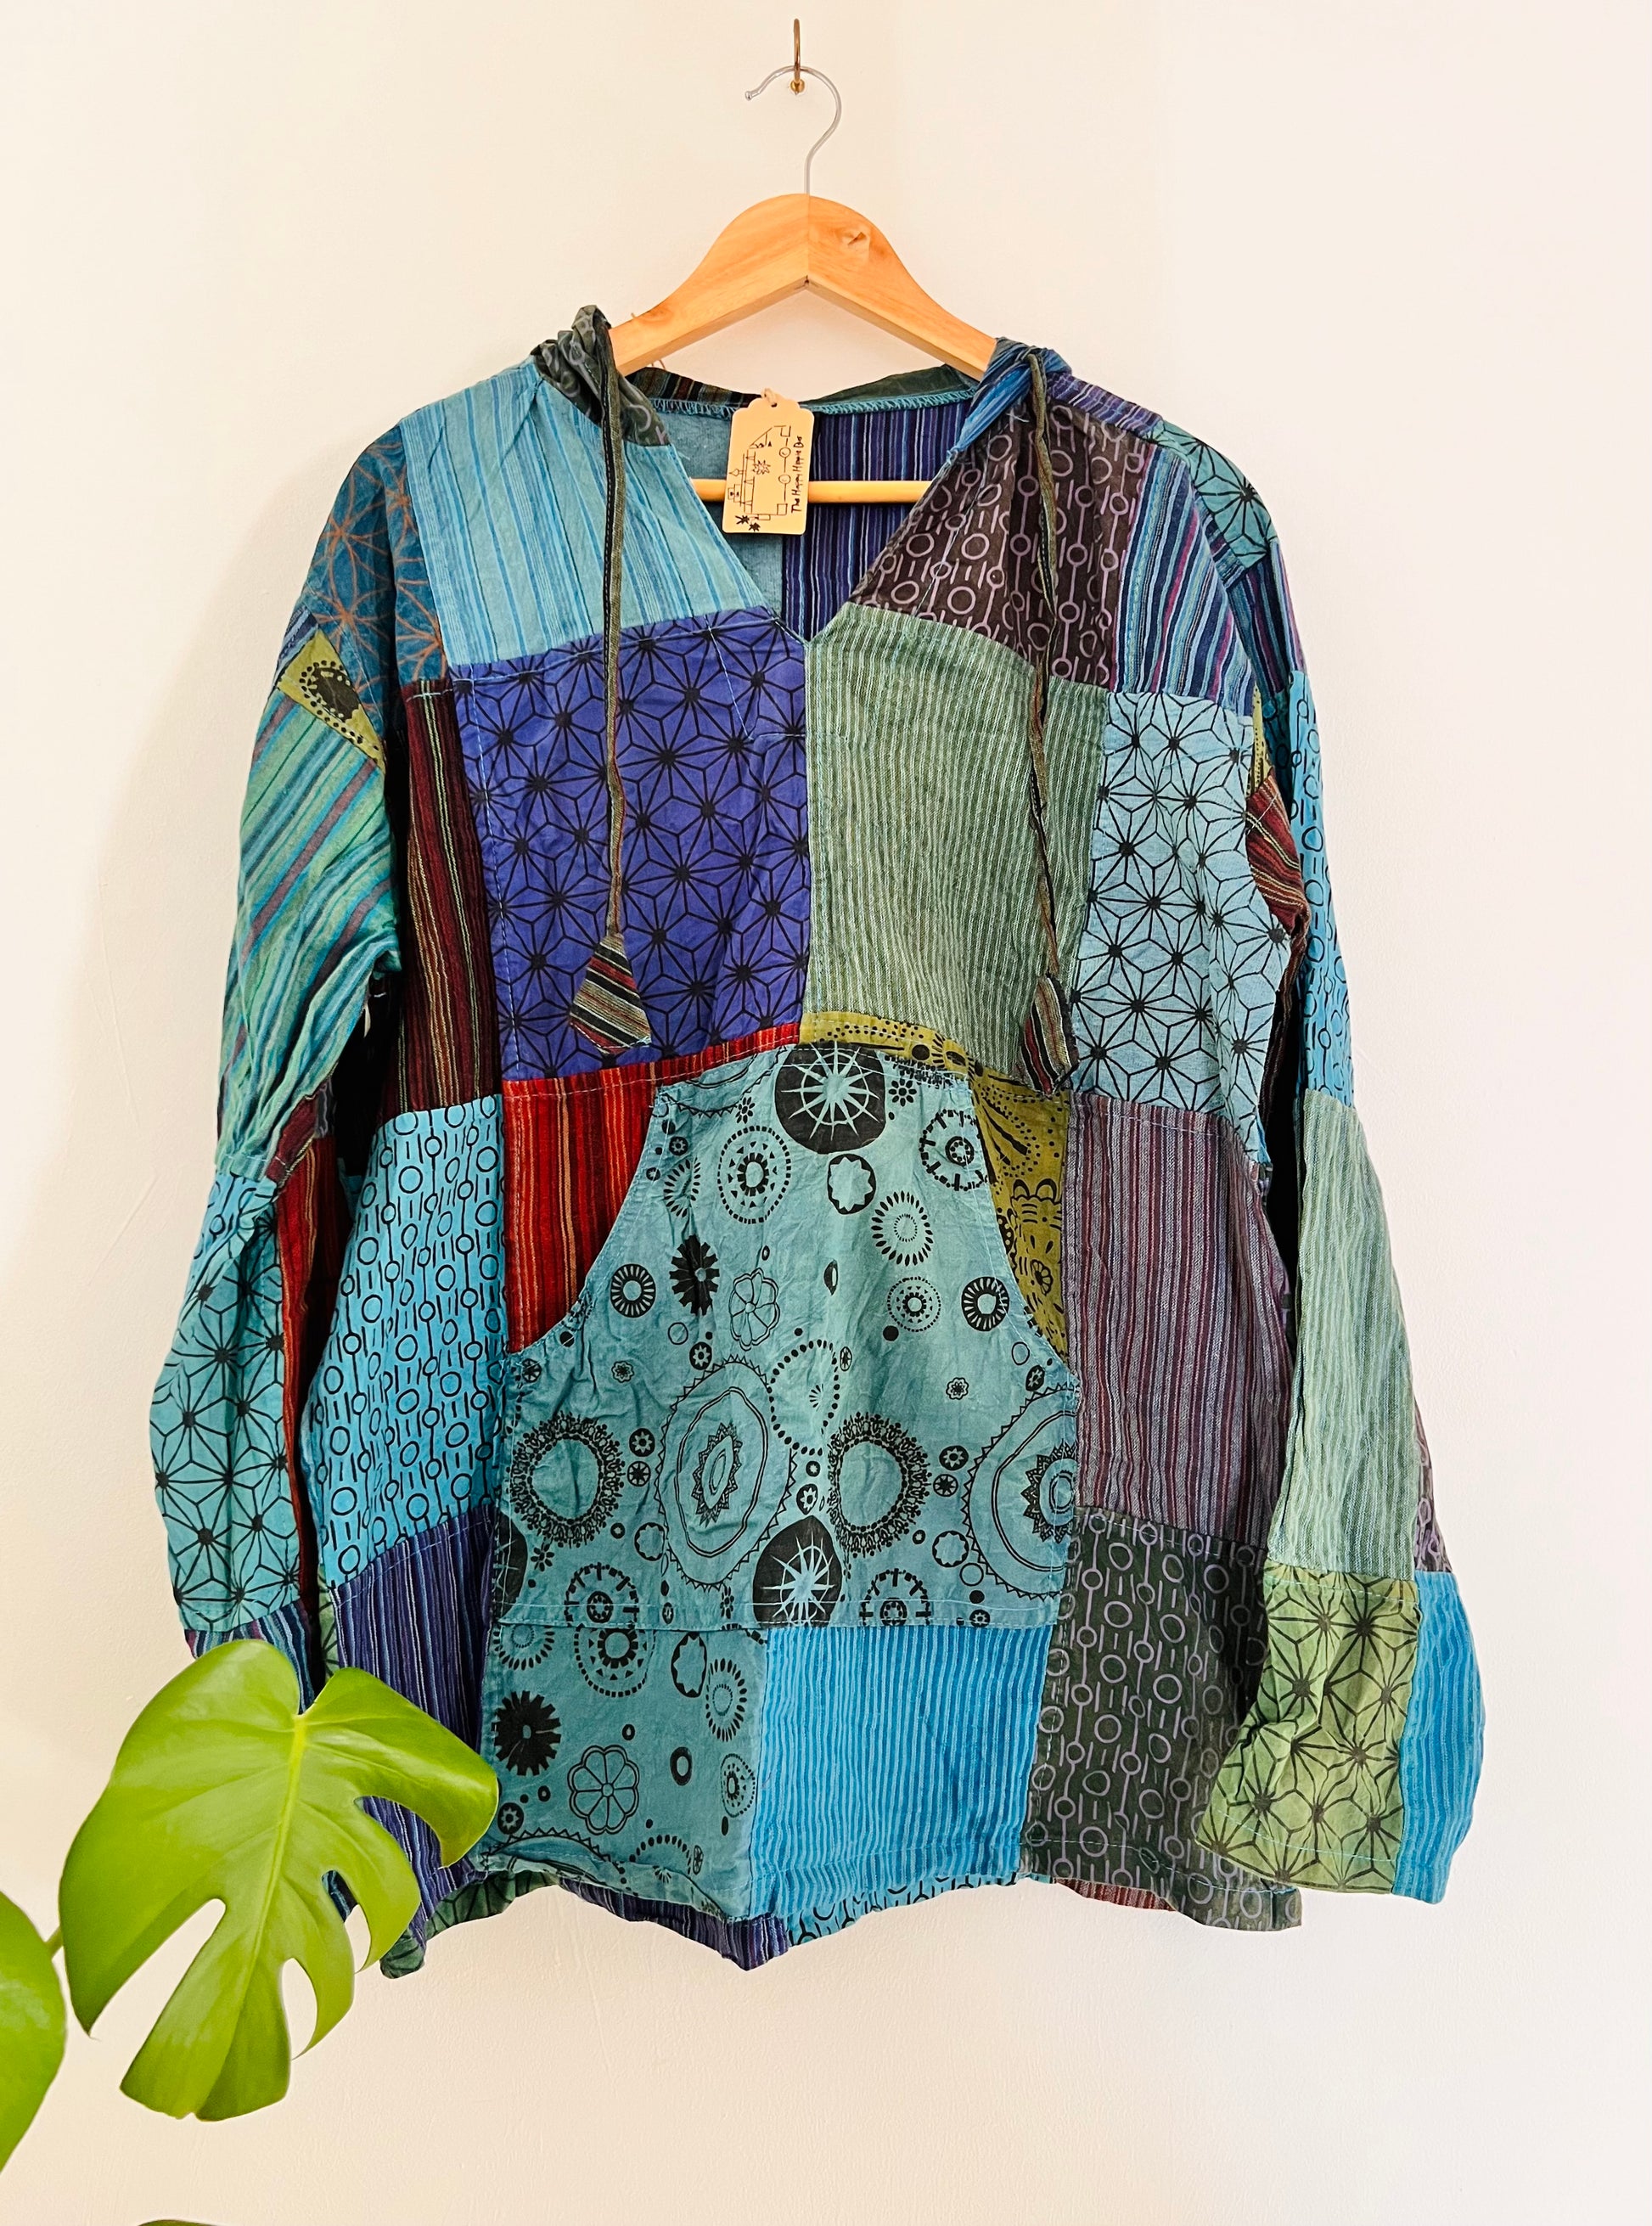 Fair trade handmade hippie boho clothing 